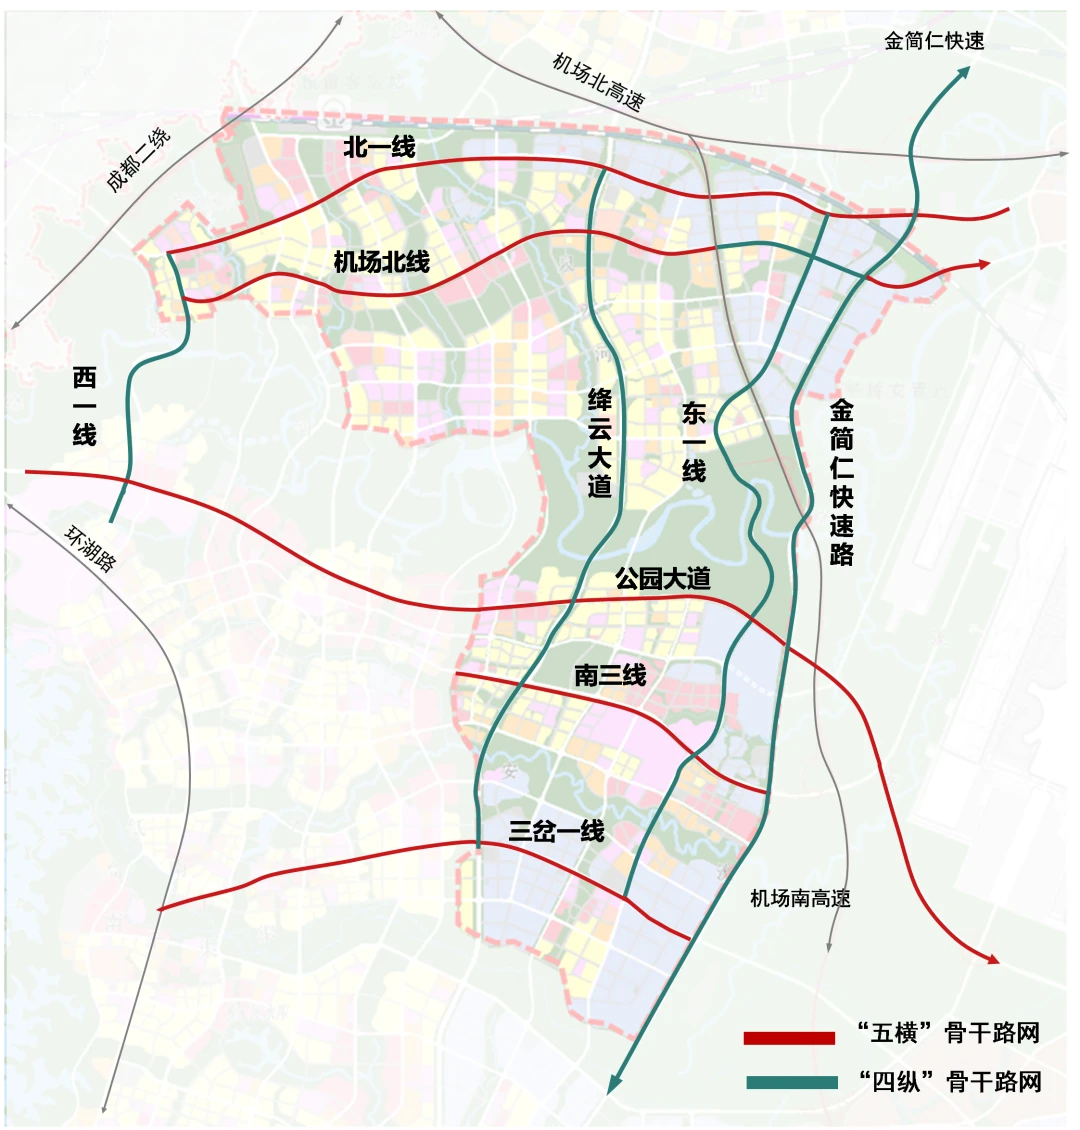 5km,红线宽40m-50m,其中江安河至规划道路(绕城高速与西航港大道之间)